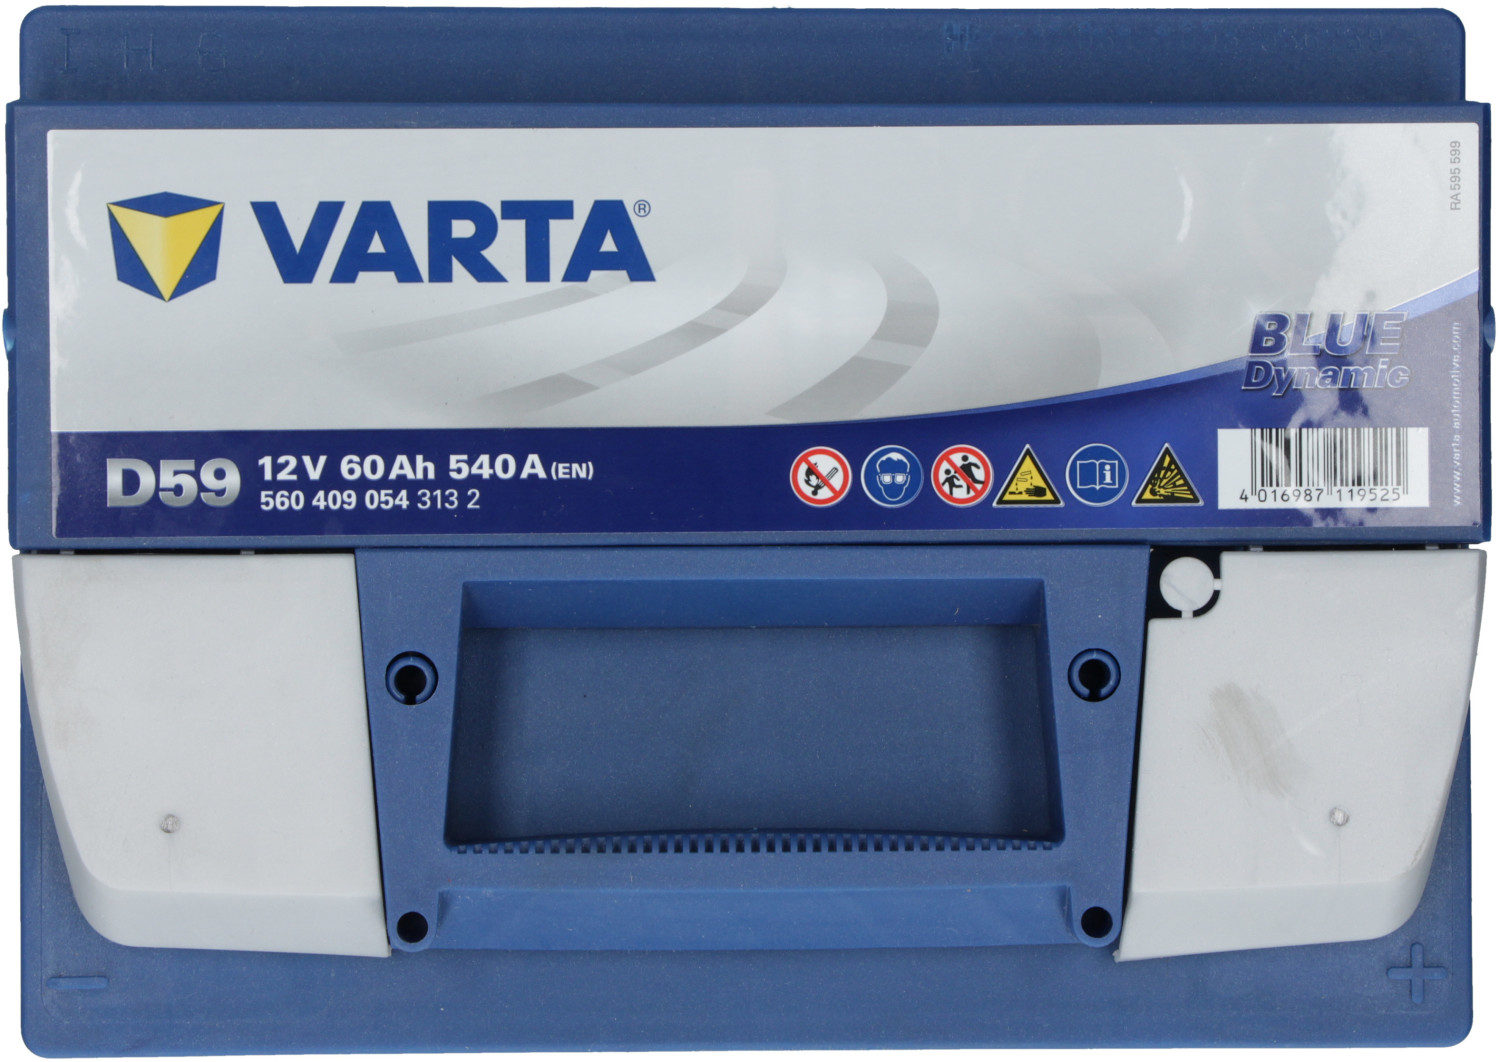 VARTA 12V 60AH D59 – Akü Outlet